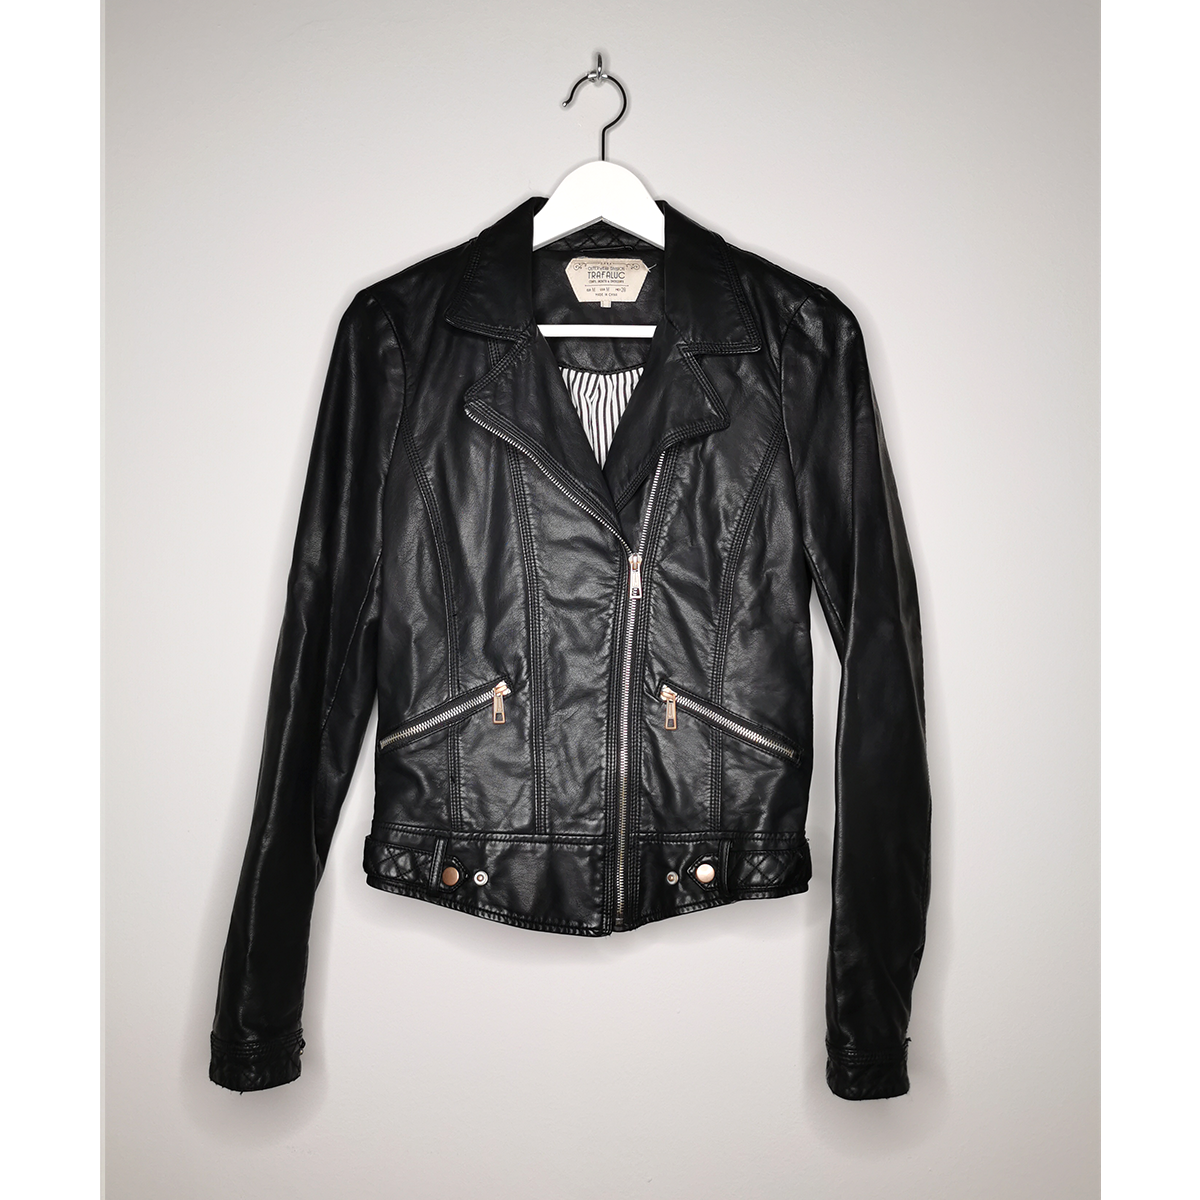 TARASCA Leather Jacket - Size M